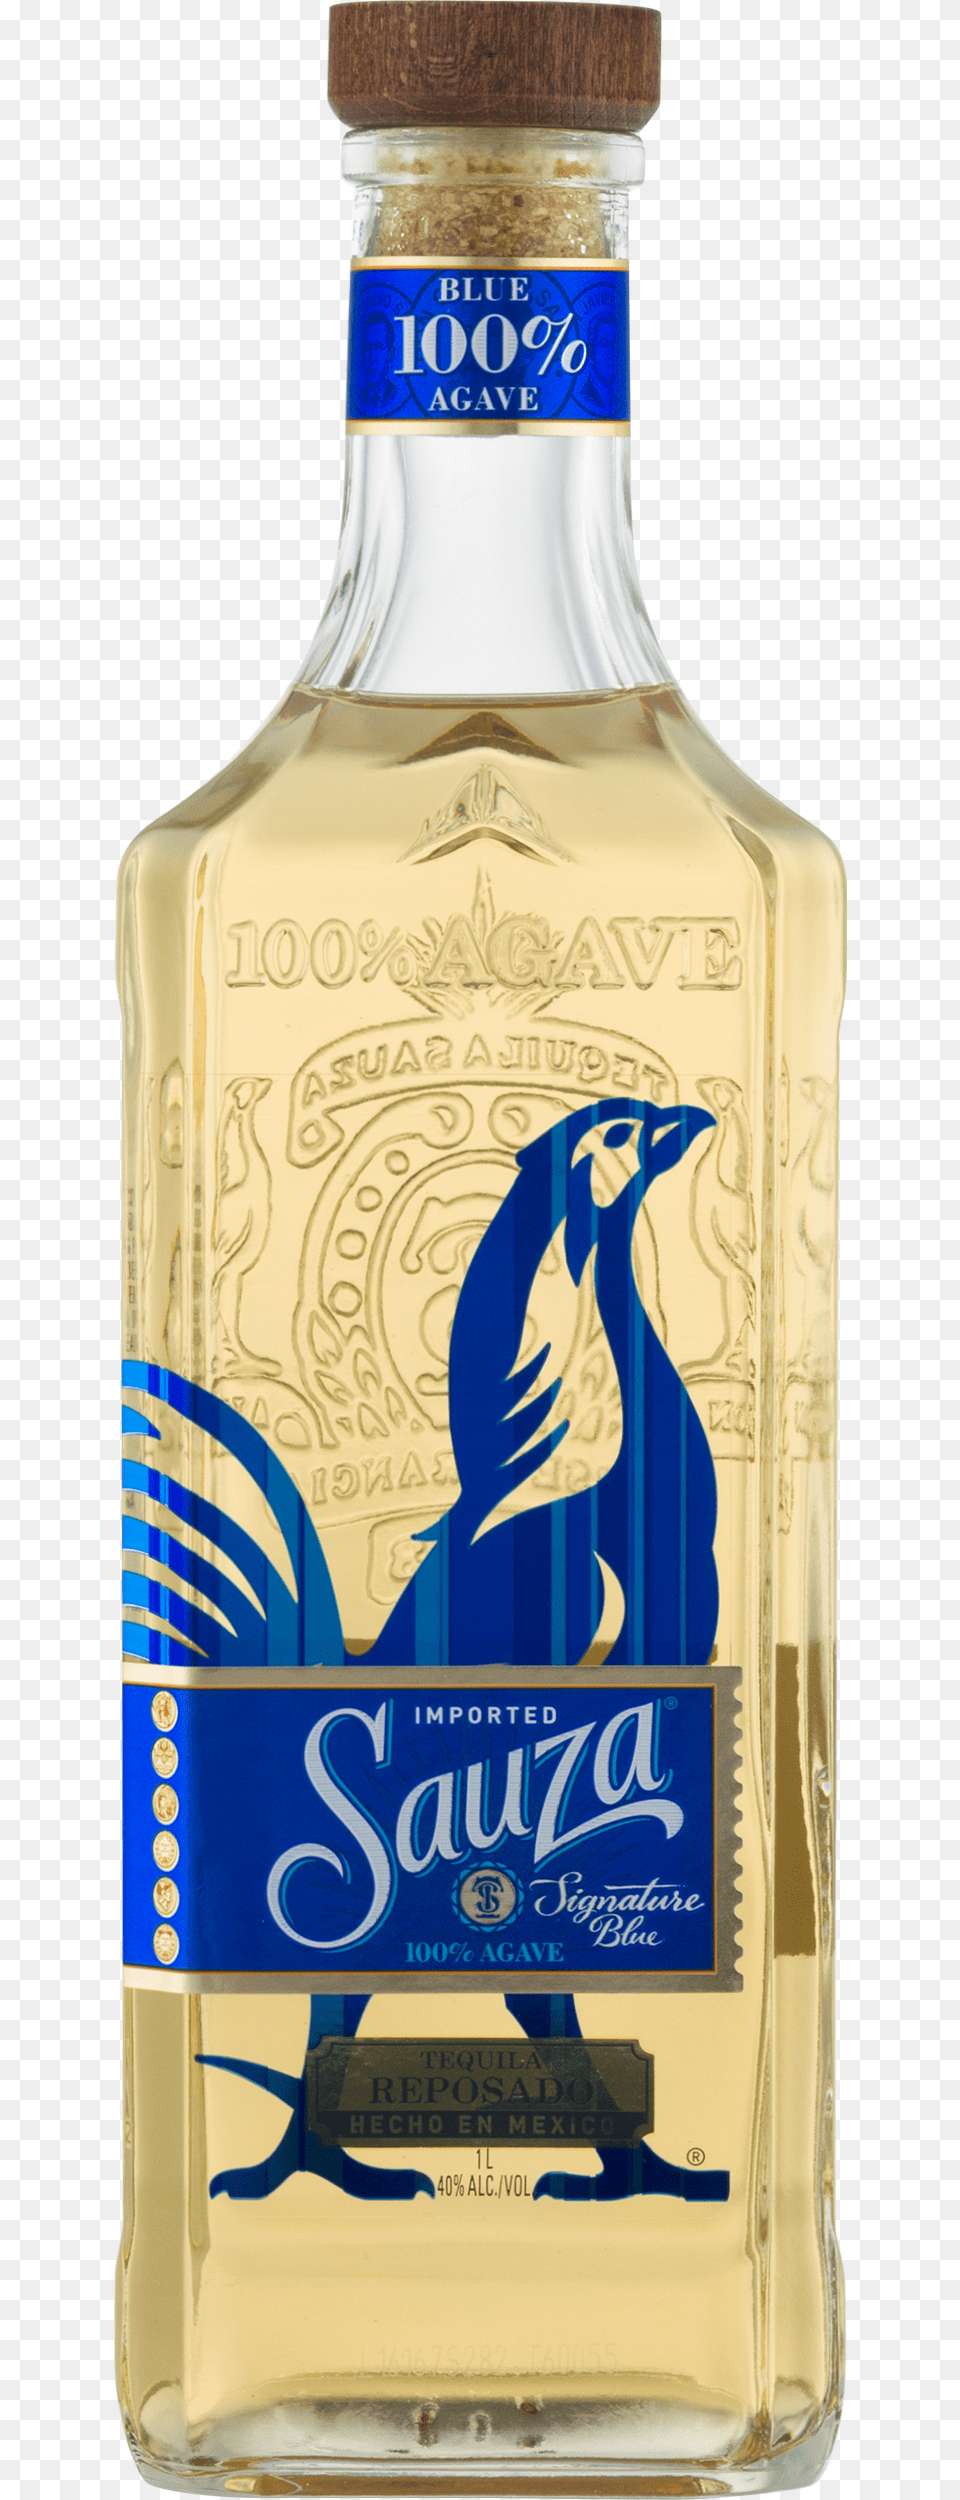 Sauza Signature Blue Reposado Tequila, Alcohol, Beverage, Liquor, Bottle Png Image